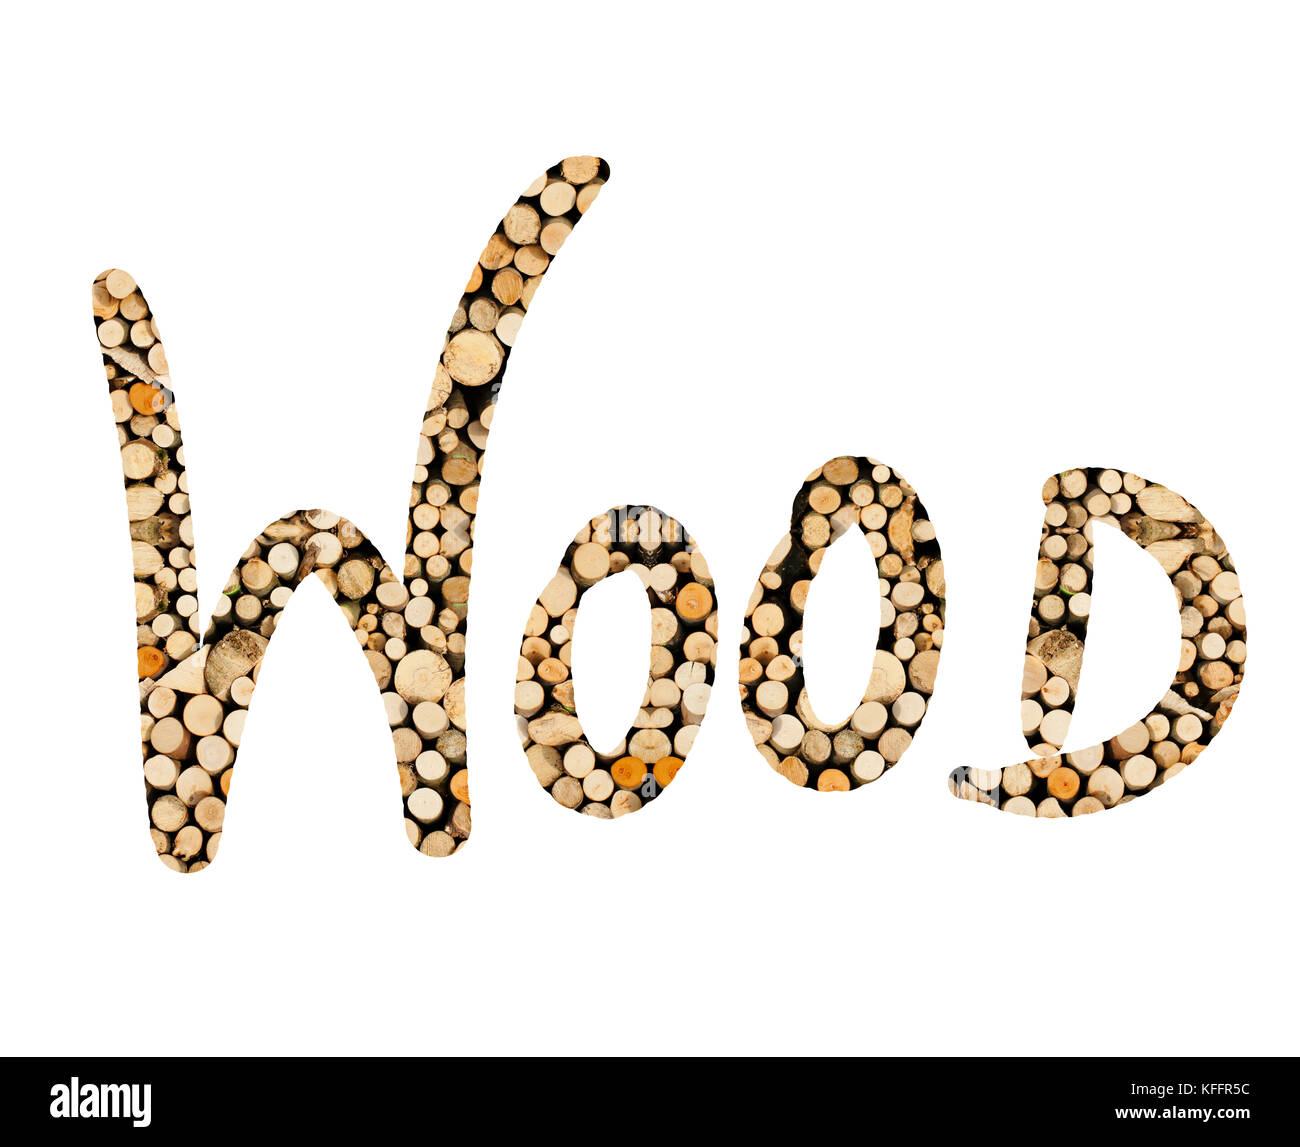 das Wort Wood mit Holz Stangen geschrieben, dargestellt Stock Photo